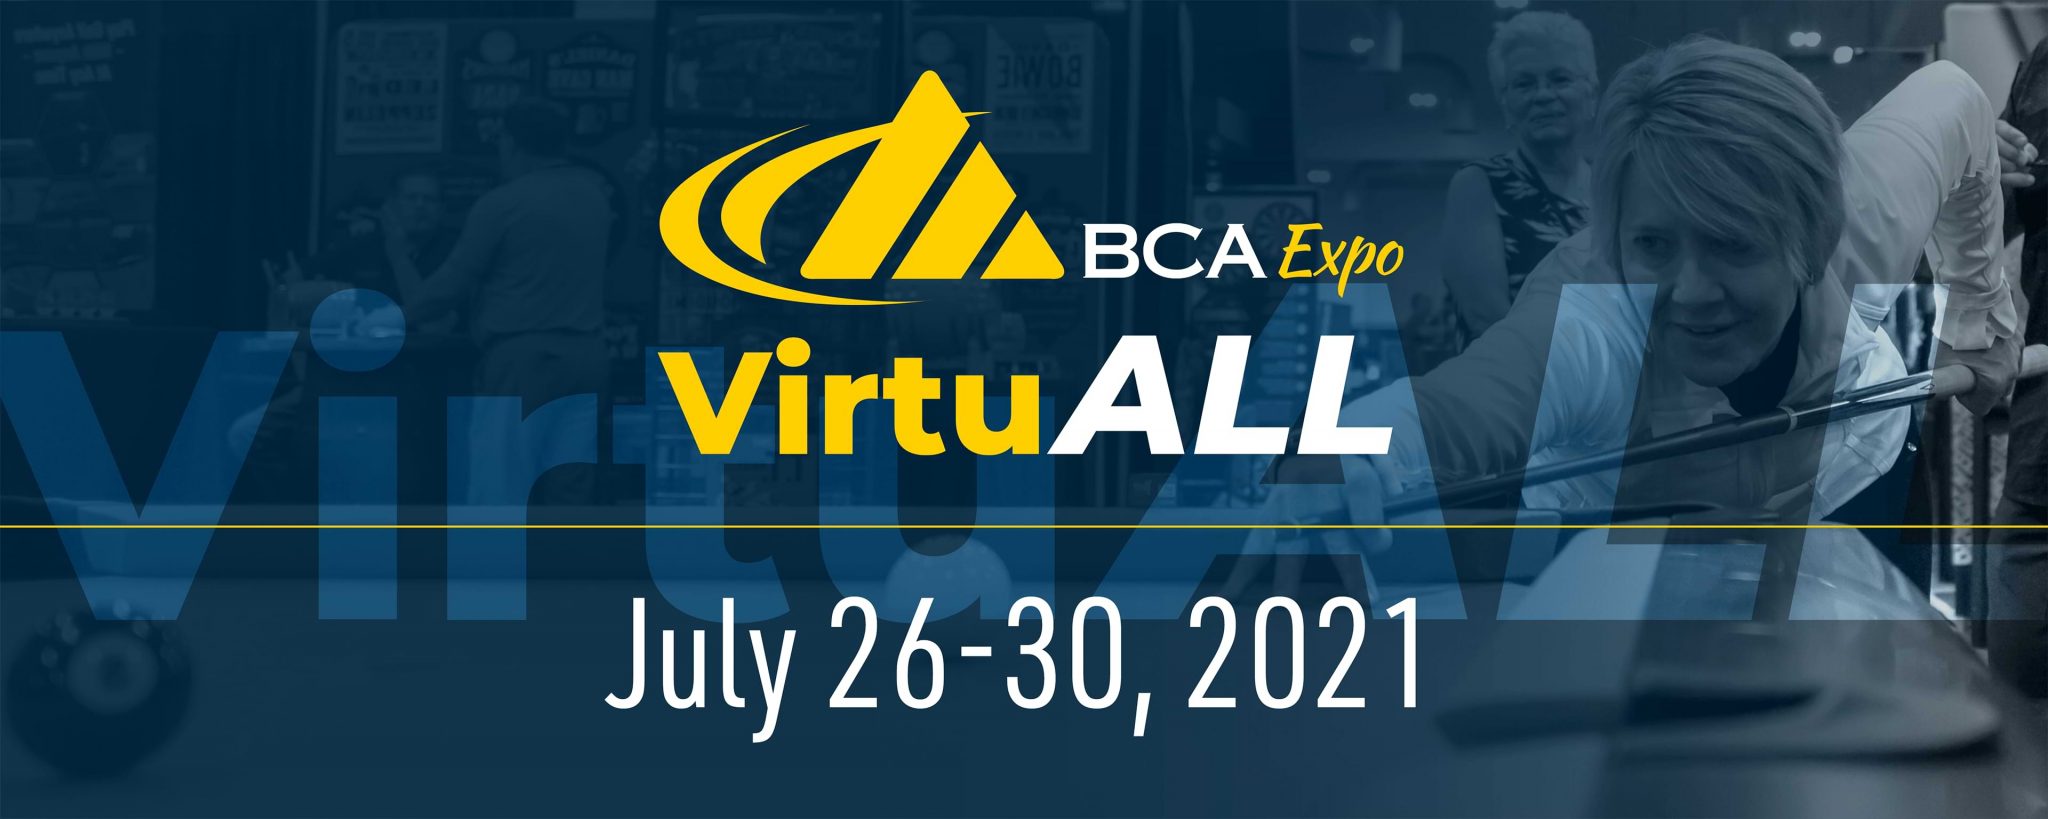 BCA Expo VirtuALL Banner